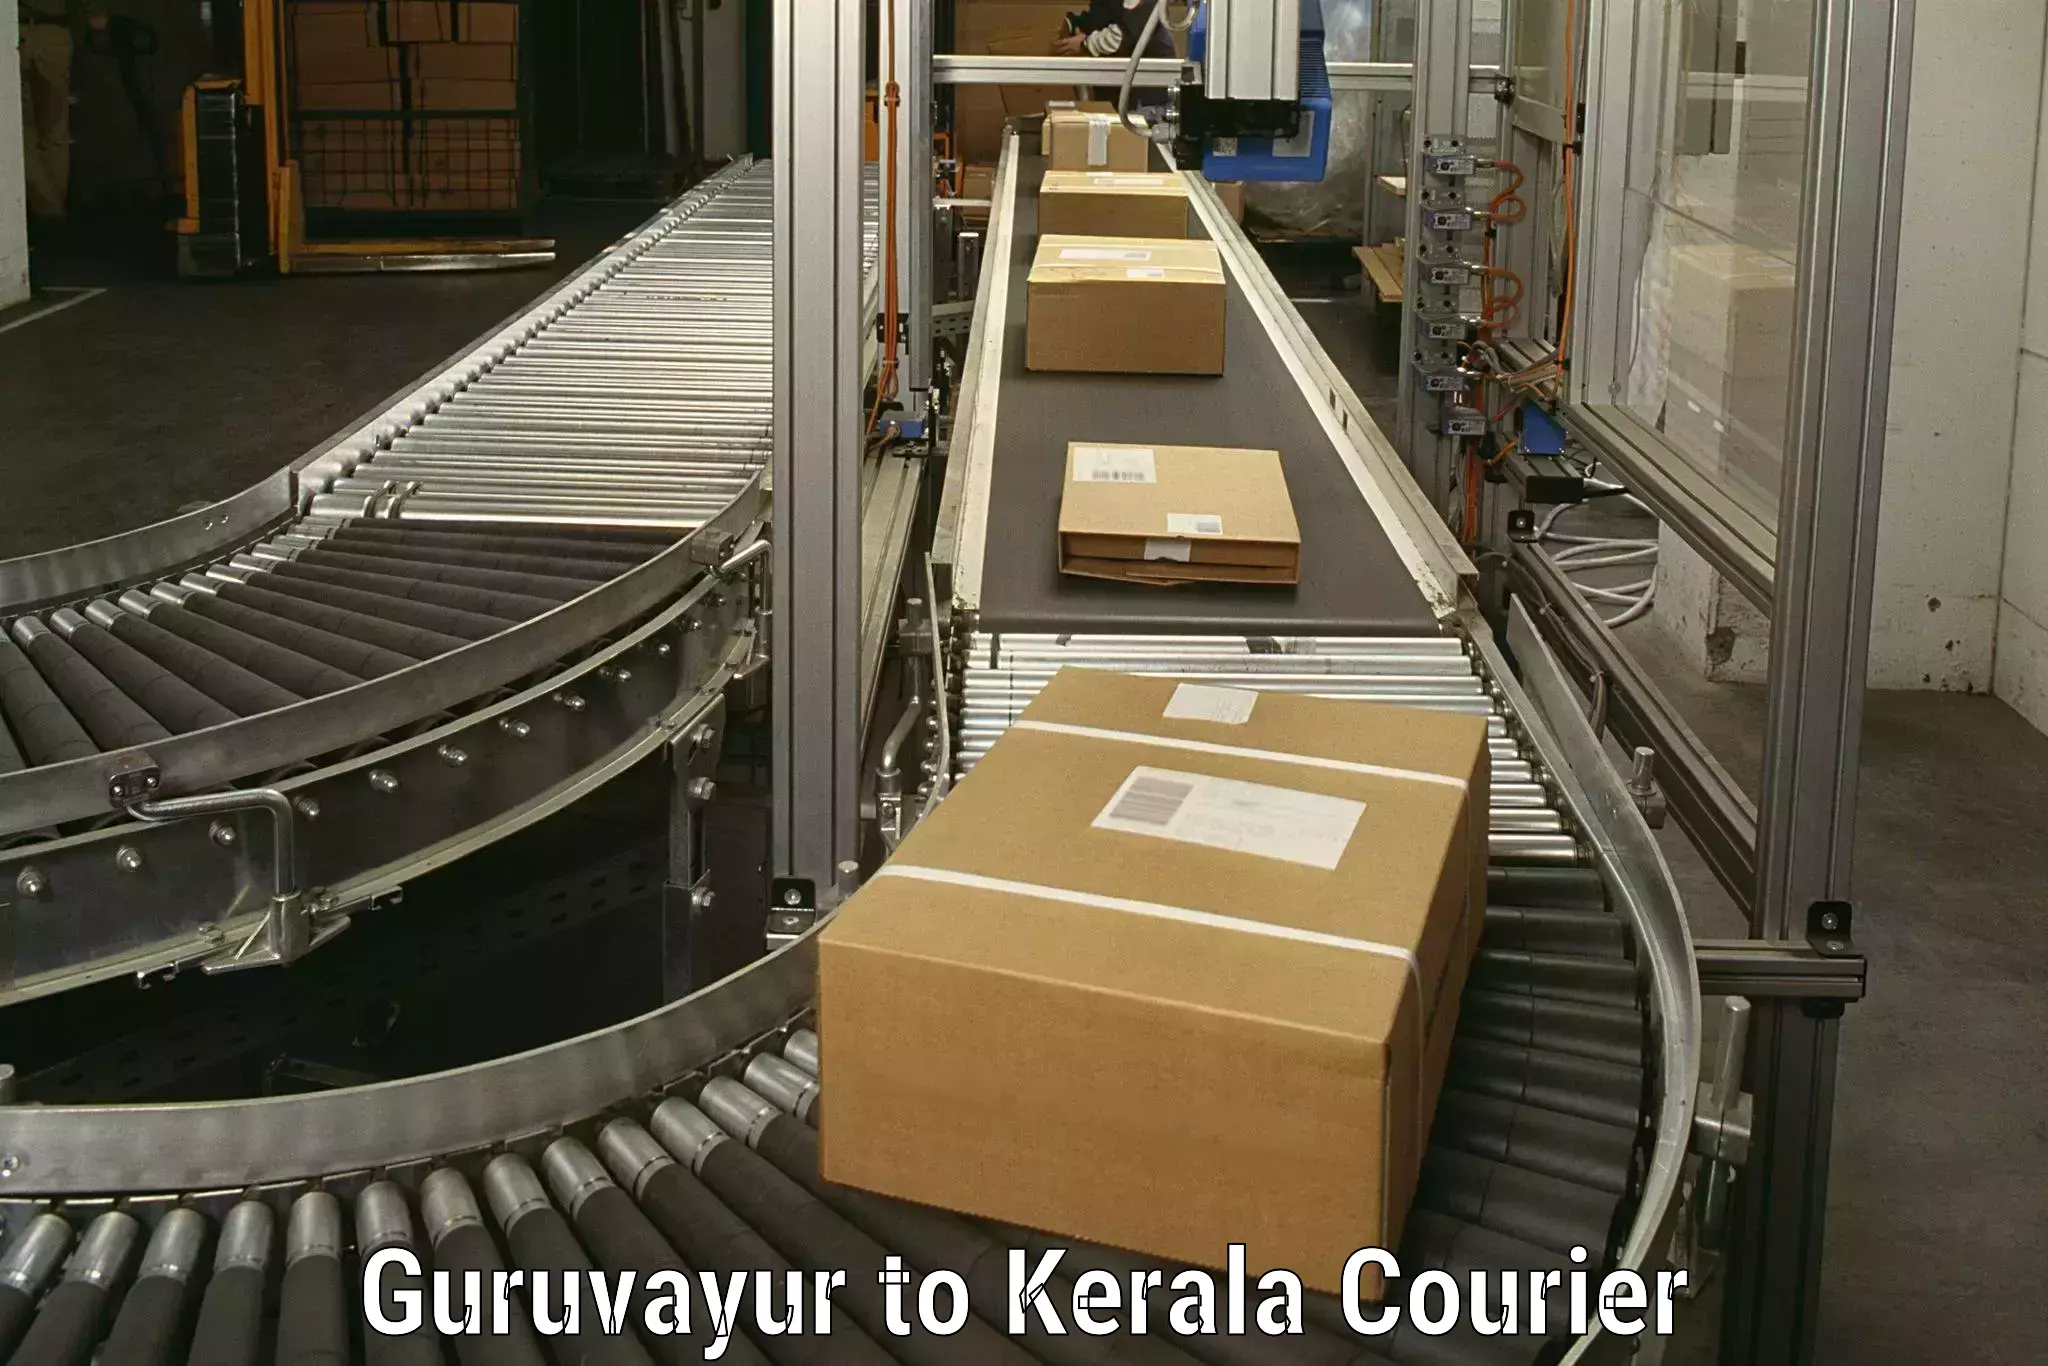 Professional movers and packers Guruvayur to Cochin Port Kochi